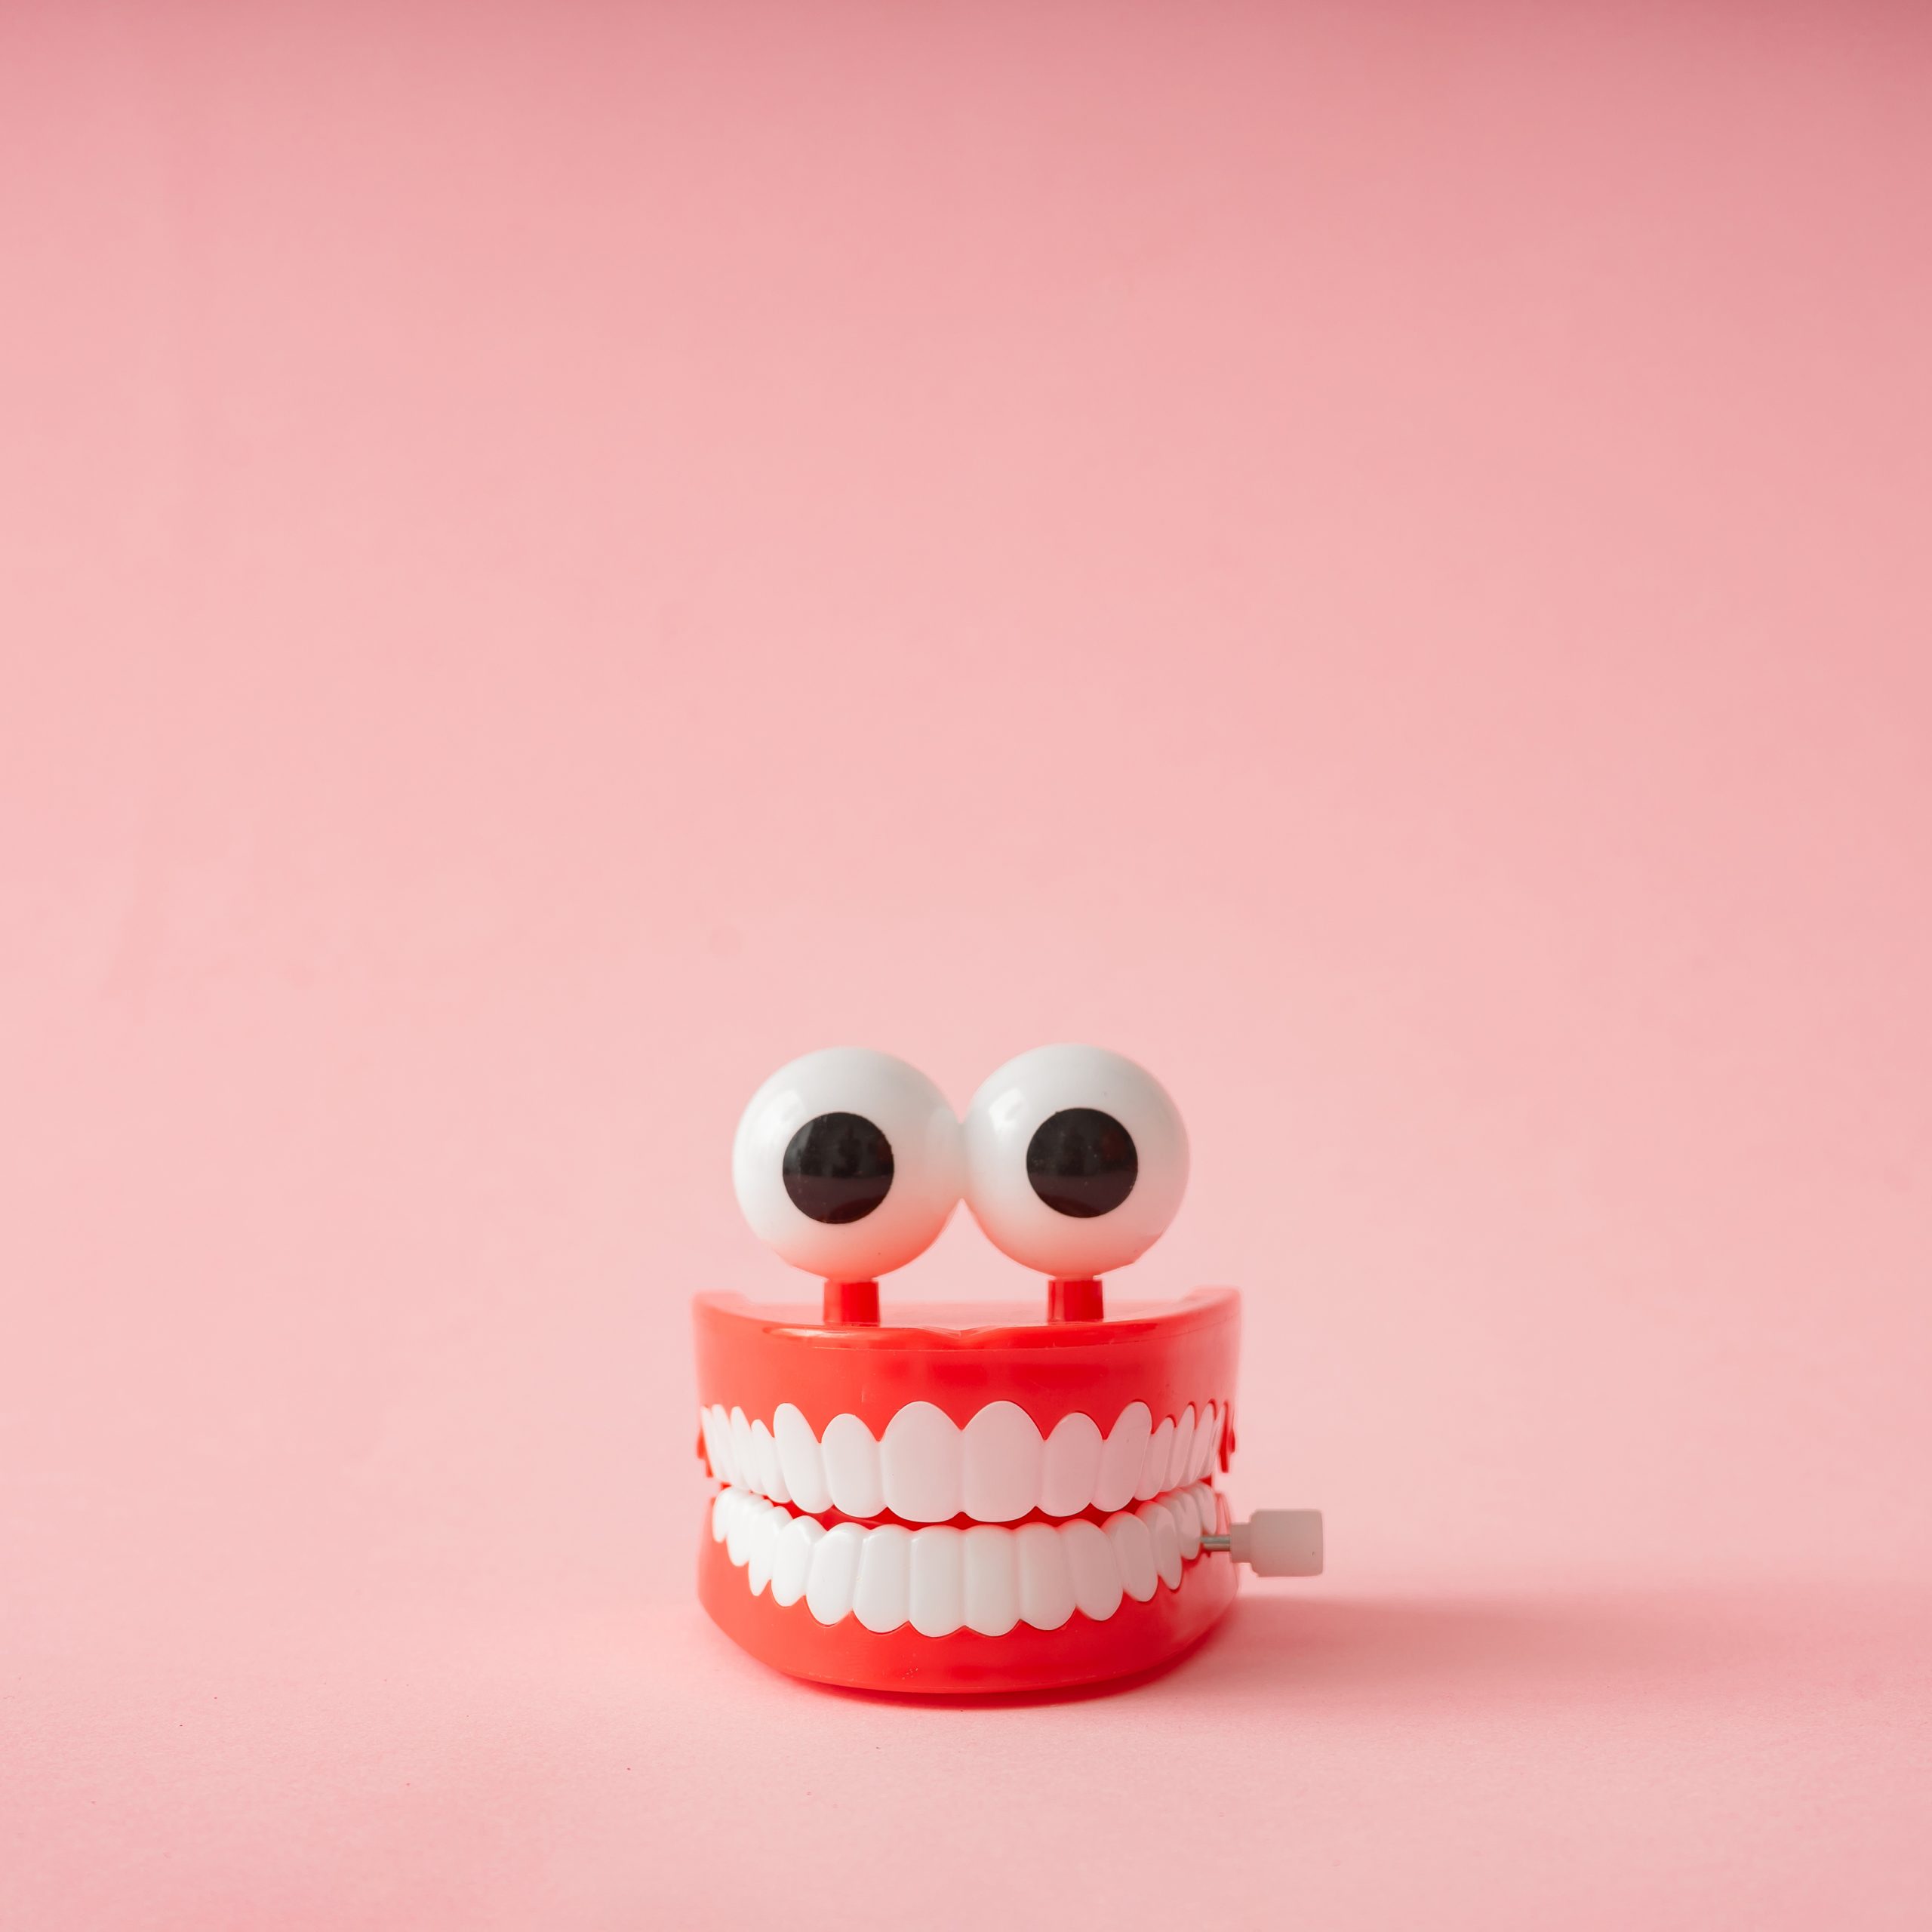 Las seis mentiras más flagrantes sobre la ortodoncia